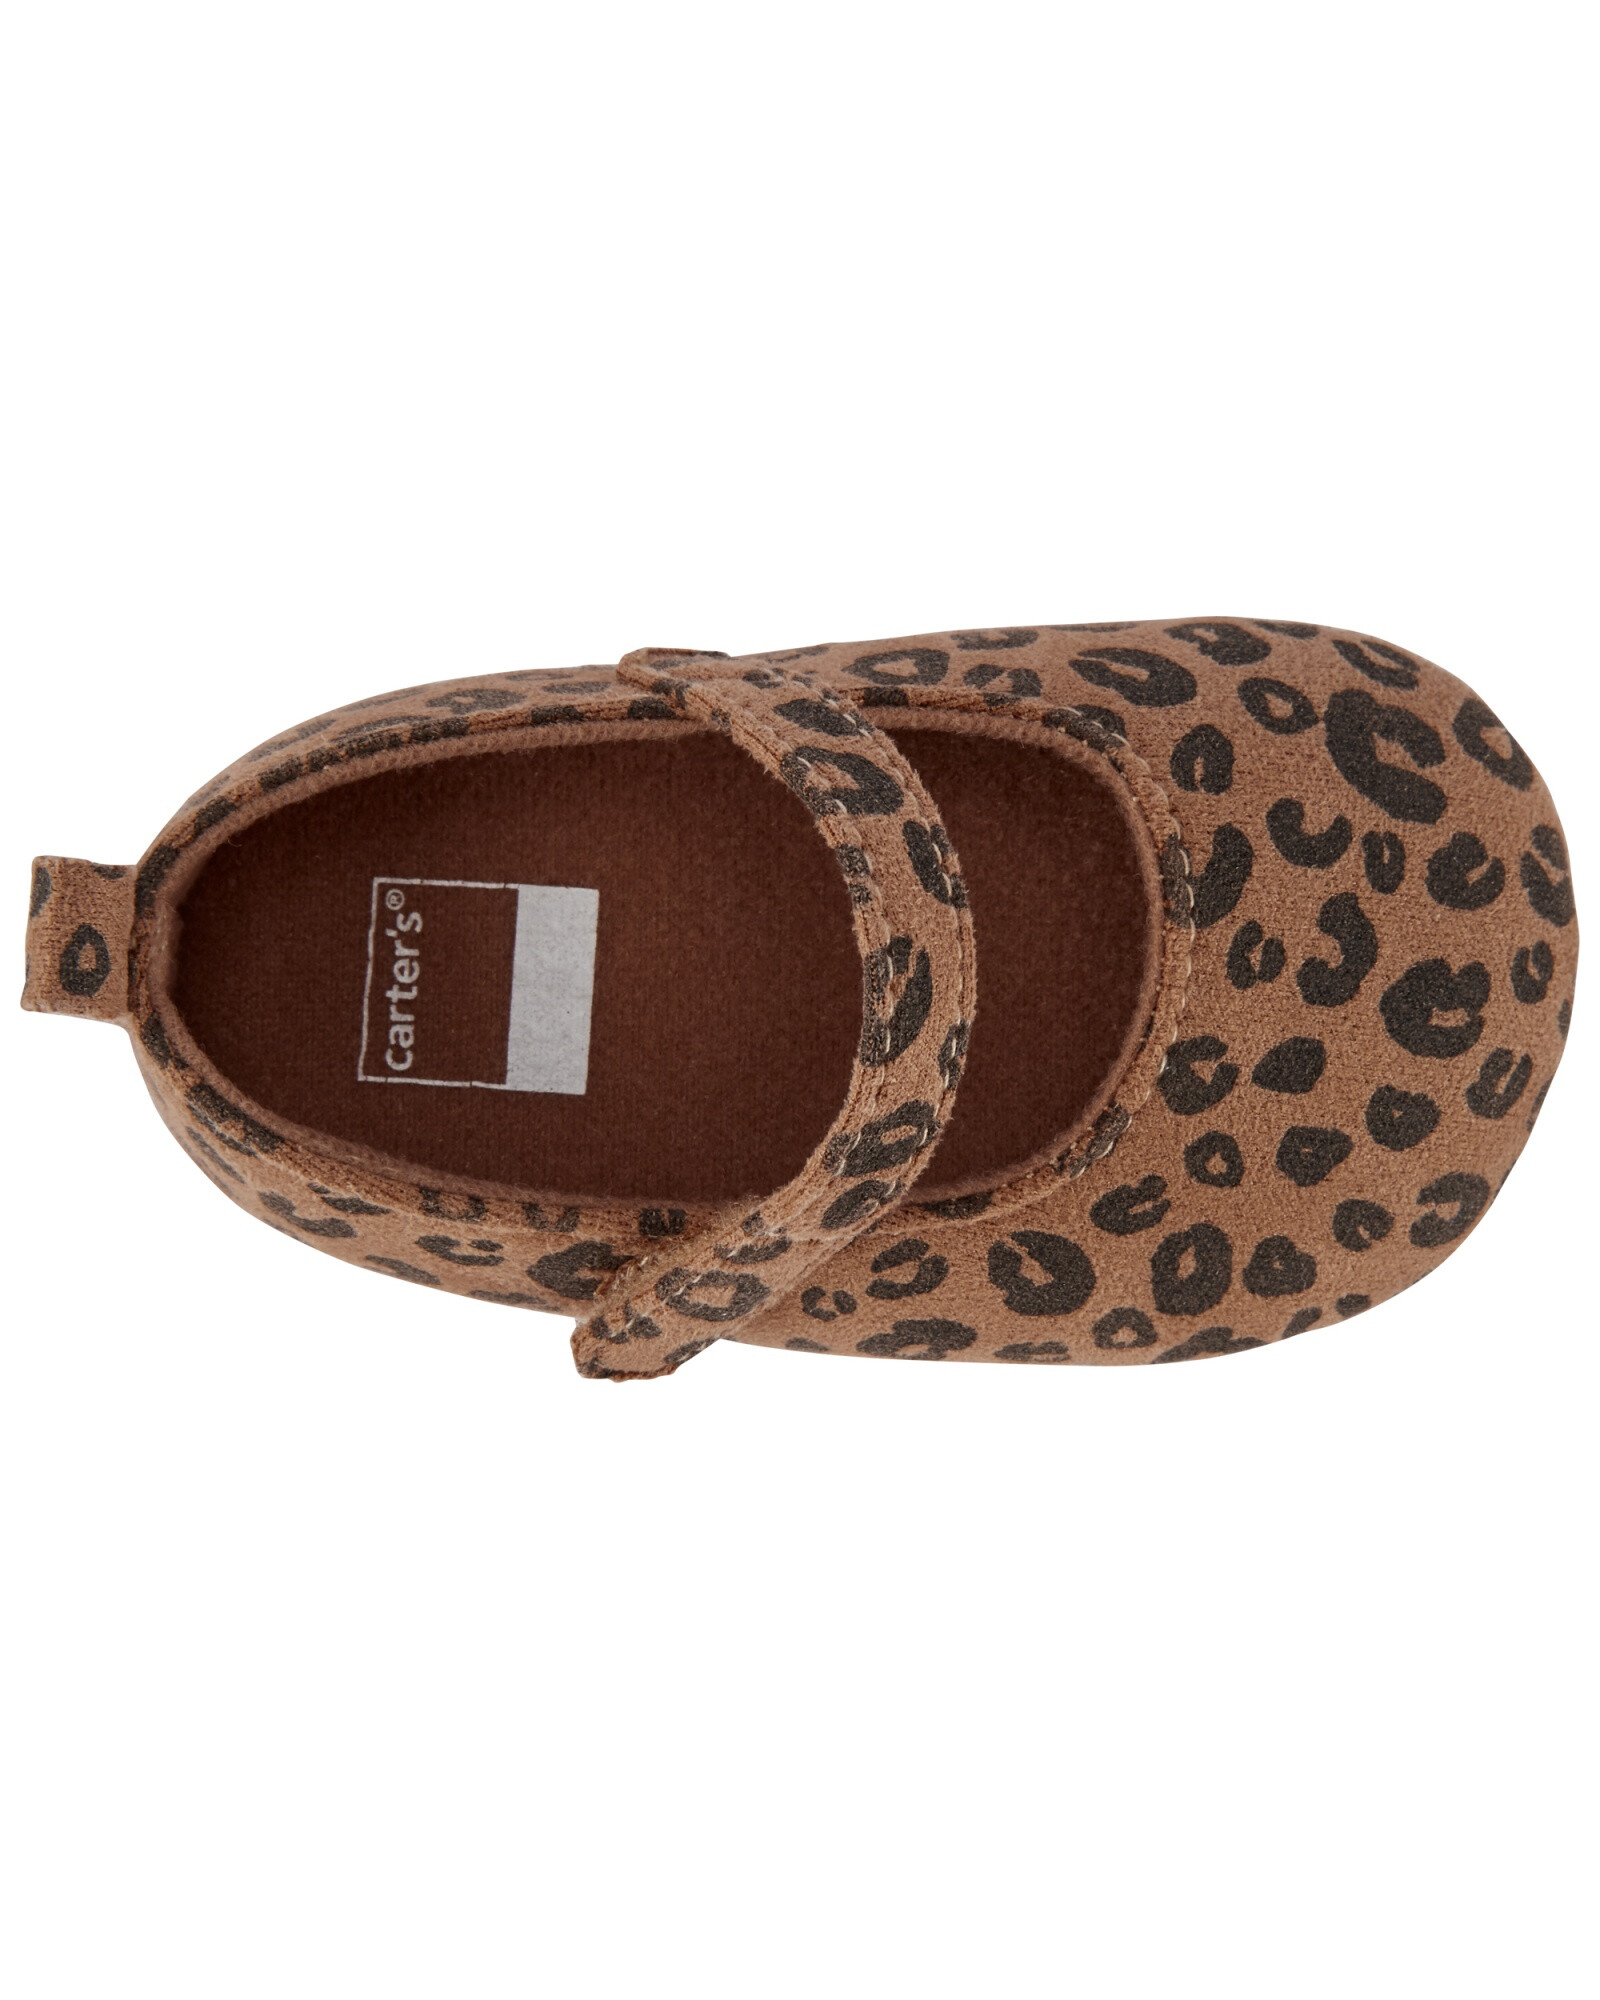 Zapatos sin suela con velcro y diseño leopardo 0